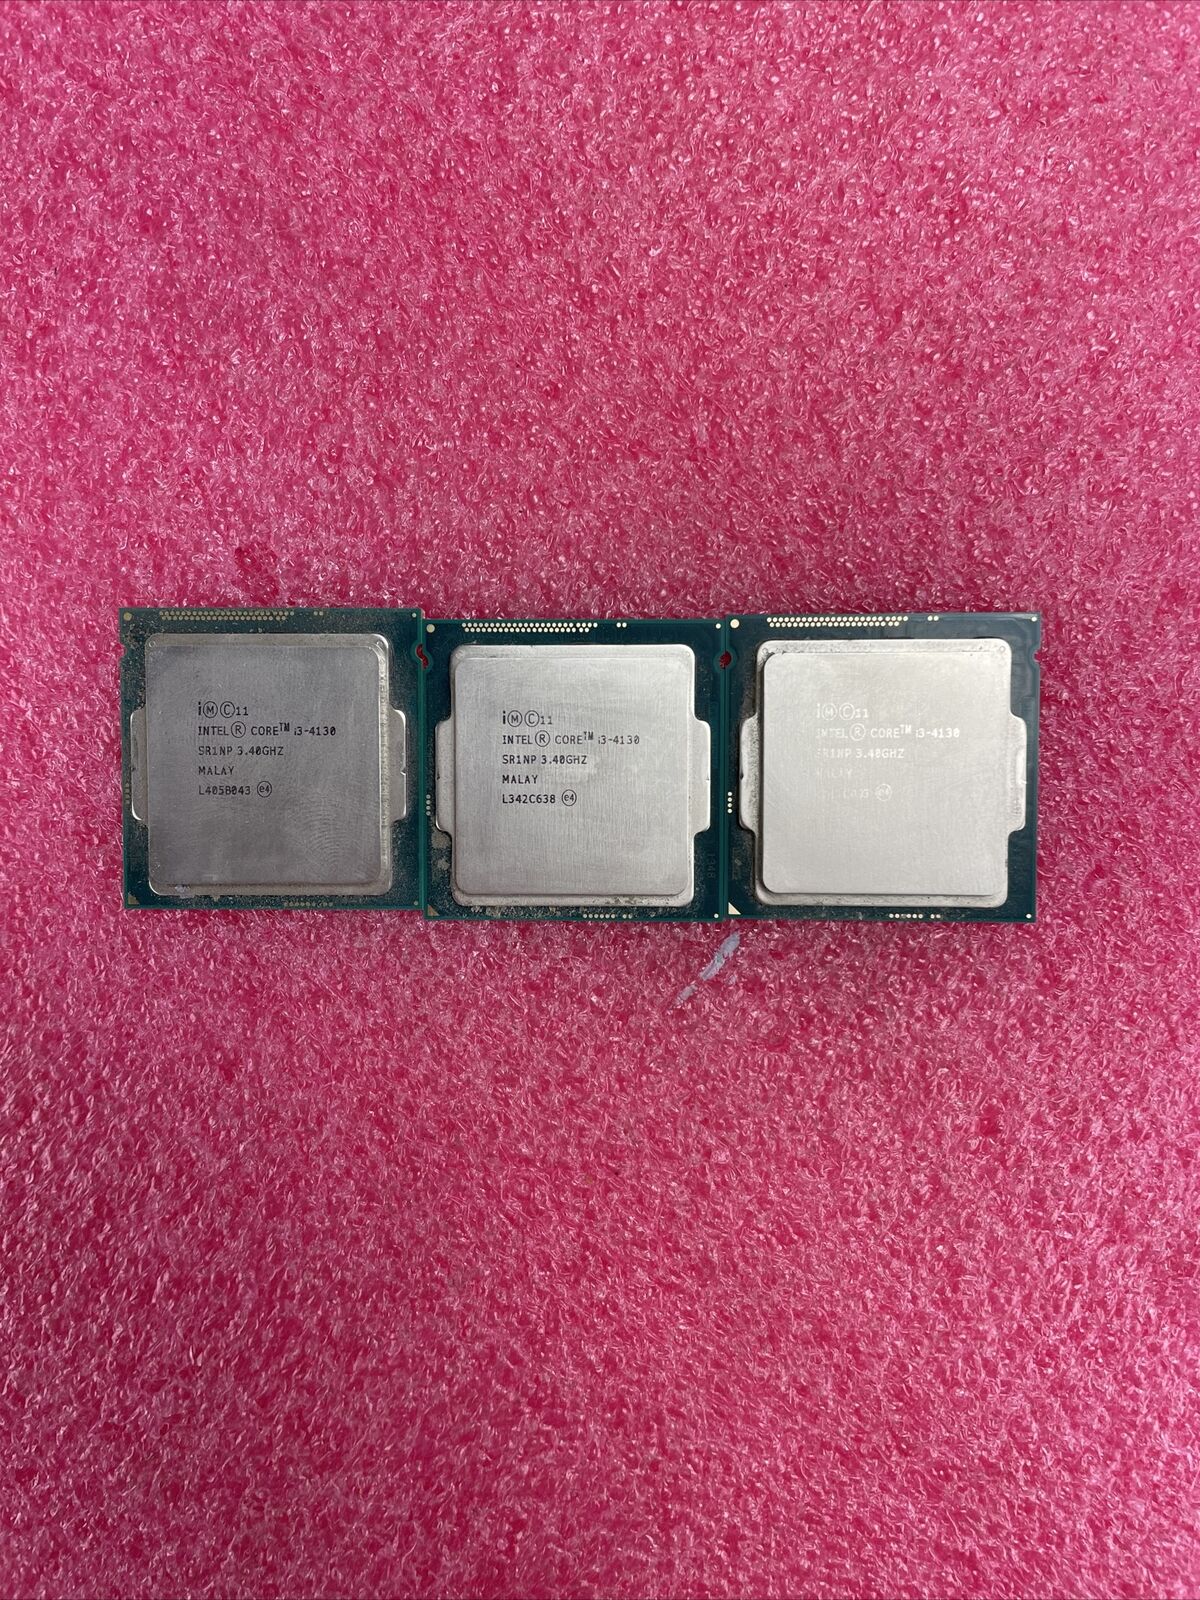 Lot of 3 Intel Core i3-4130 SR1NP 3.4GHz Processor